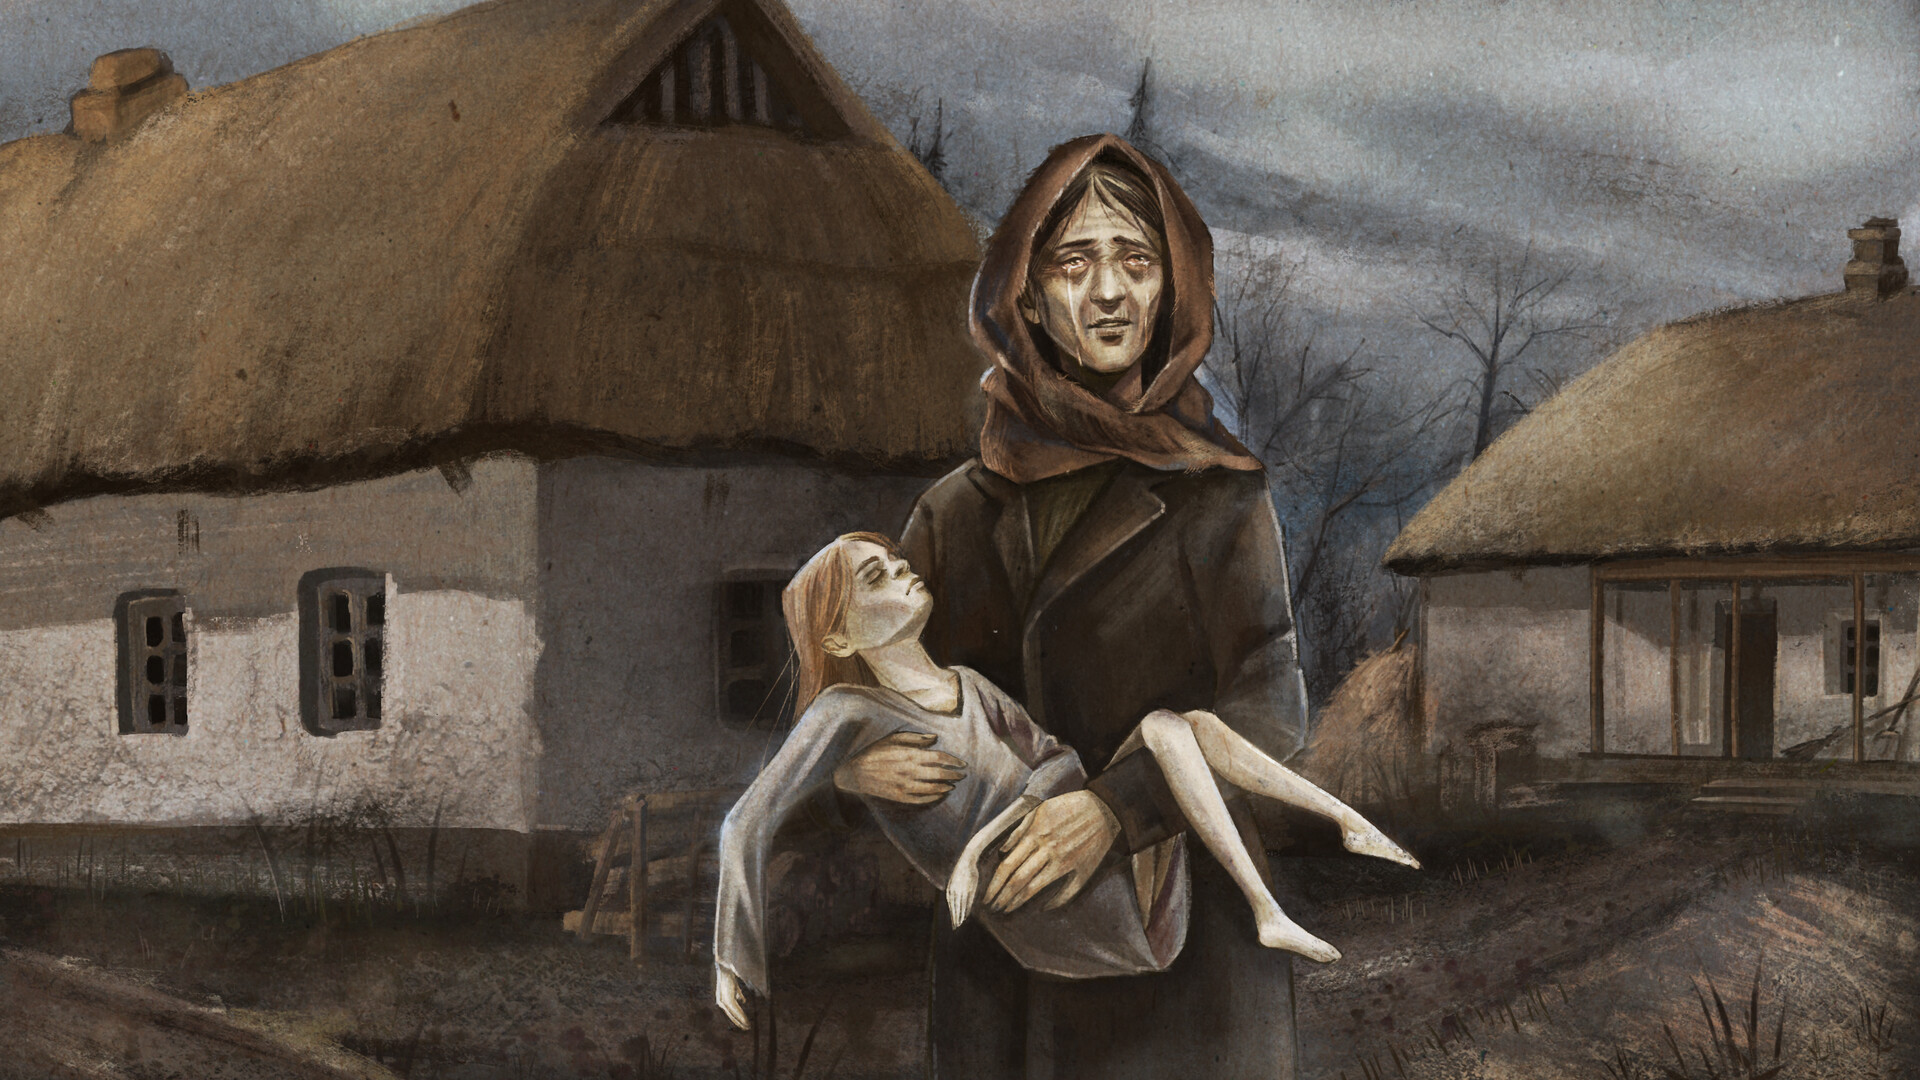 Украинская студия работает над игрой о Голодоморе. Опубликован трейлер